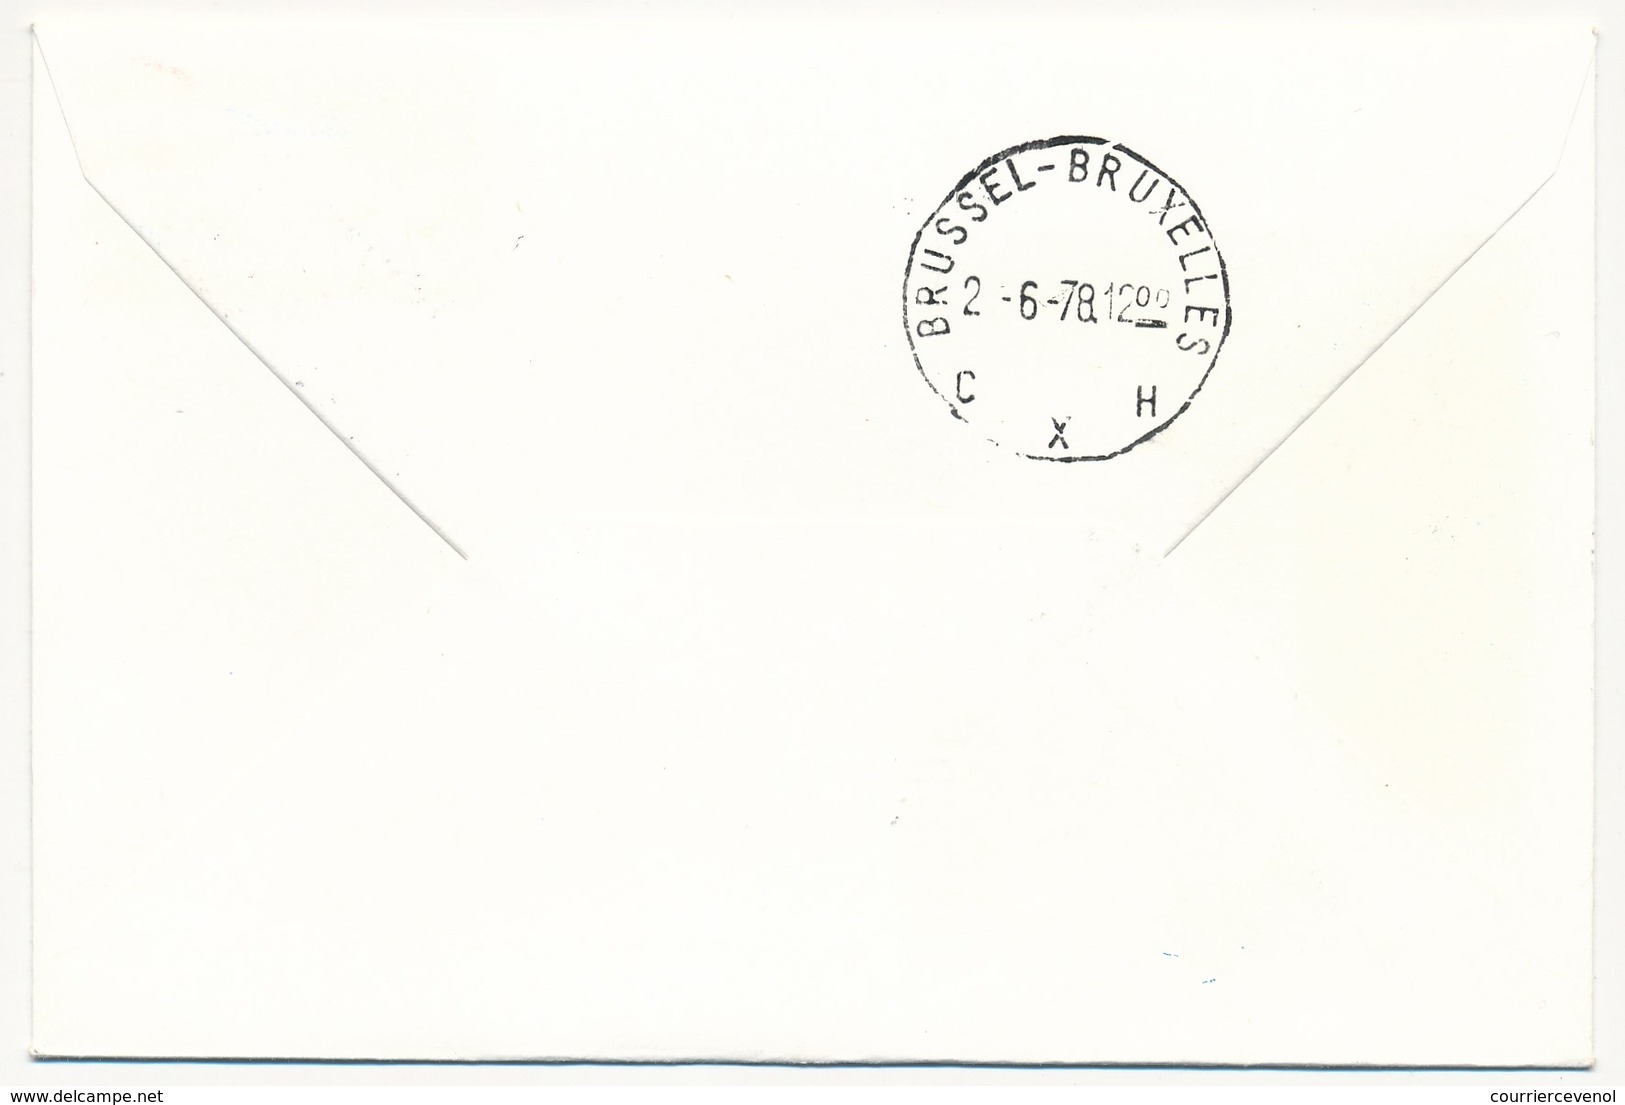 USA / BELGIQUE - 2 Enveloppes SABENA - 1ere Liaison Aérienne - ATLANTA BRUSSELS - 1.6.1978 Et Retour - 3c. 1961-... Lettres